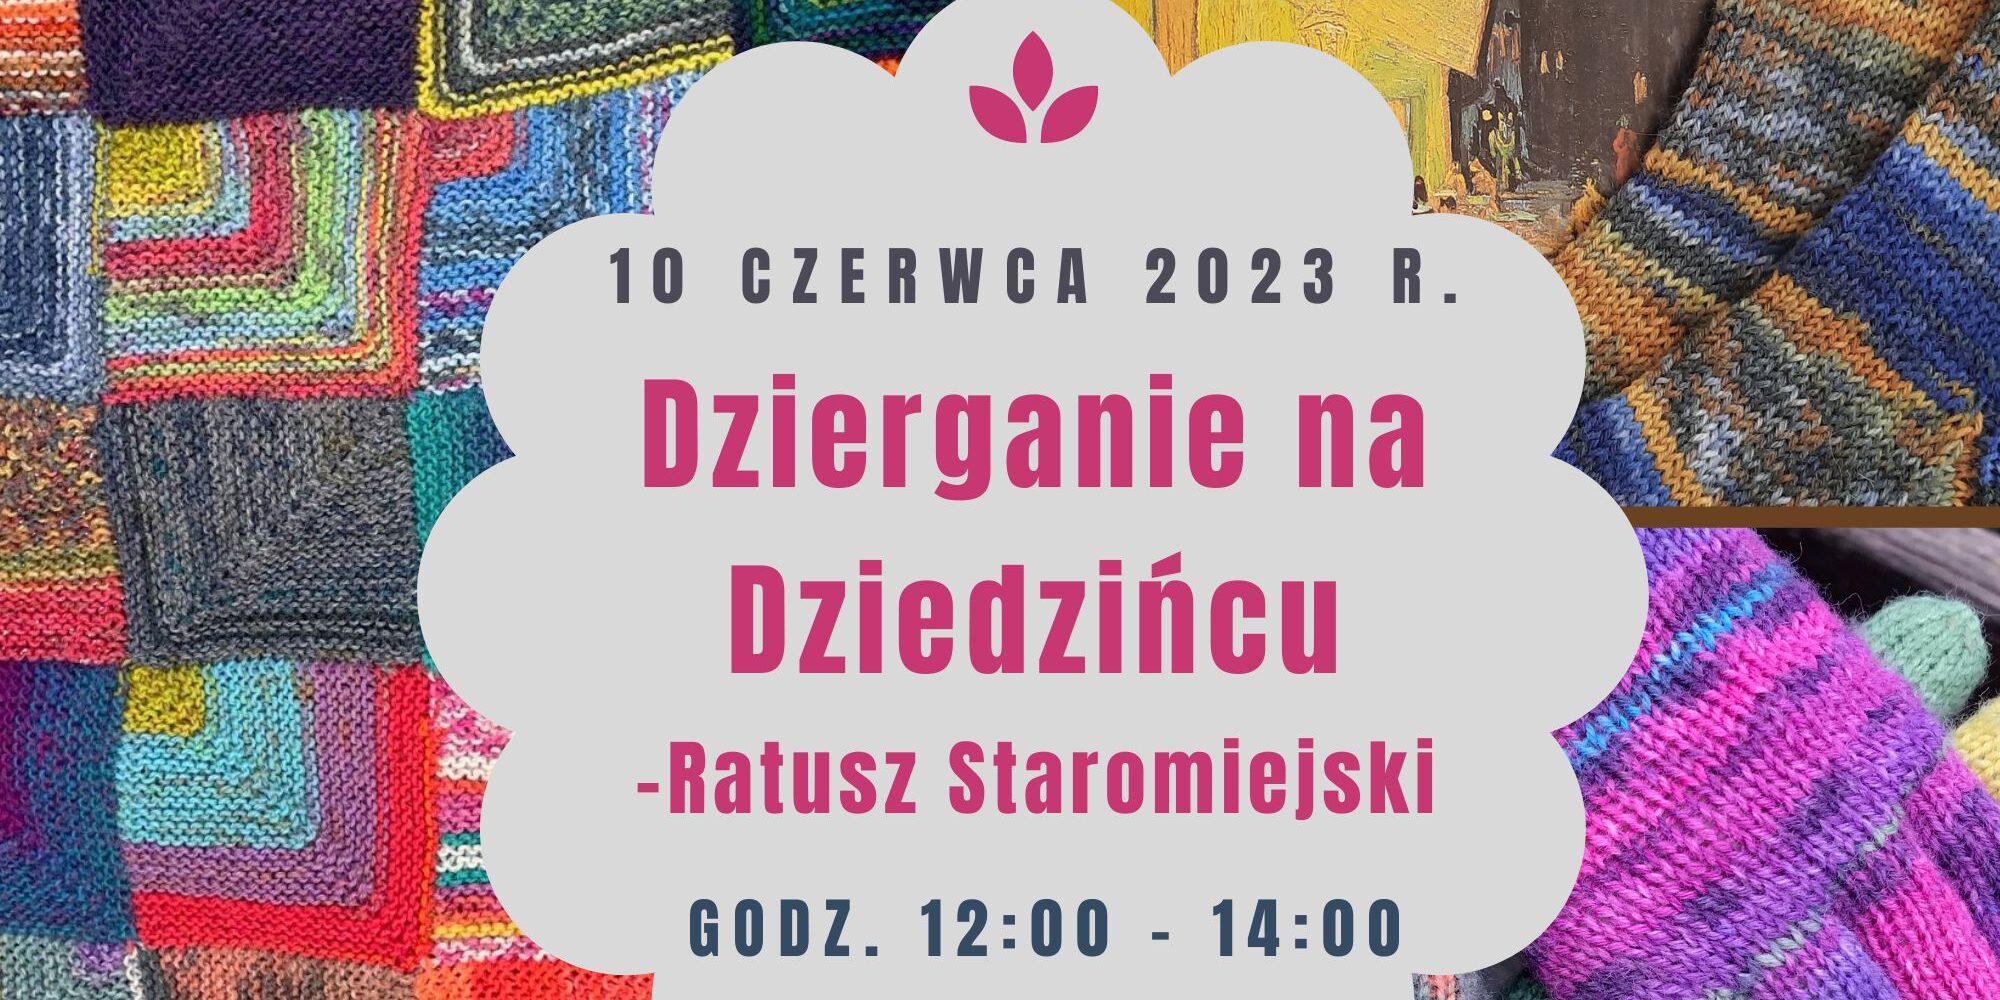 Spotkanie toruńskich dziewiarek – ,,Dzierganie na Dziedzińcu” Ratusza Staromiejskiego w dniu 10 czerwca 2023 r.